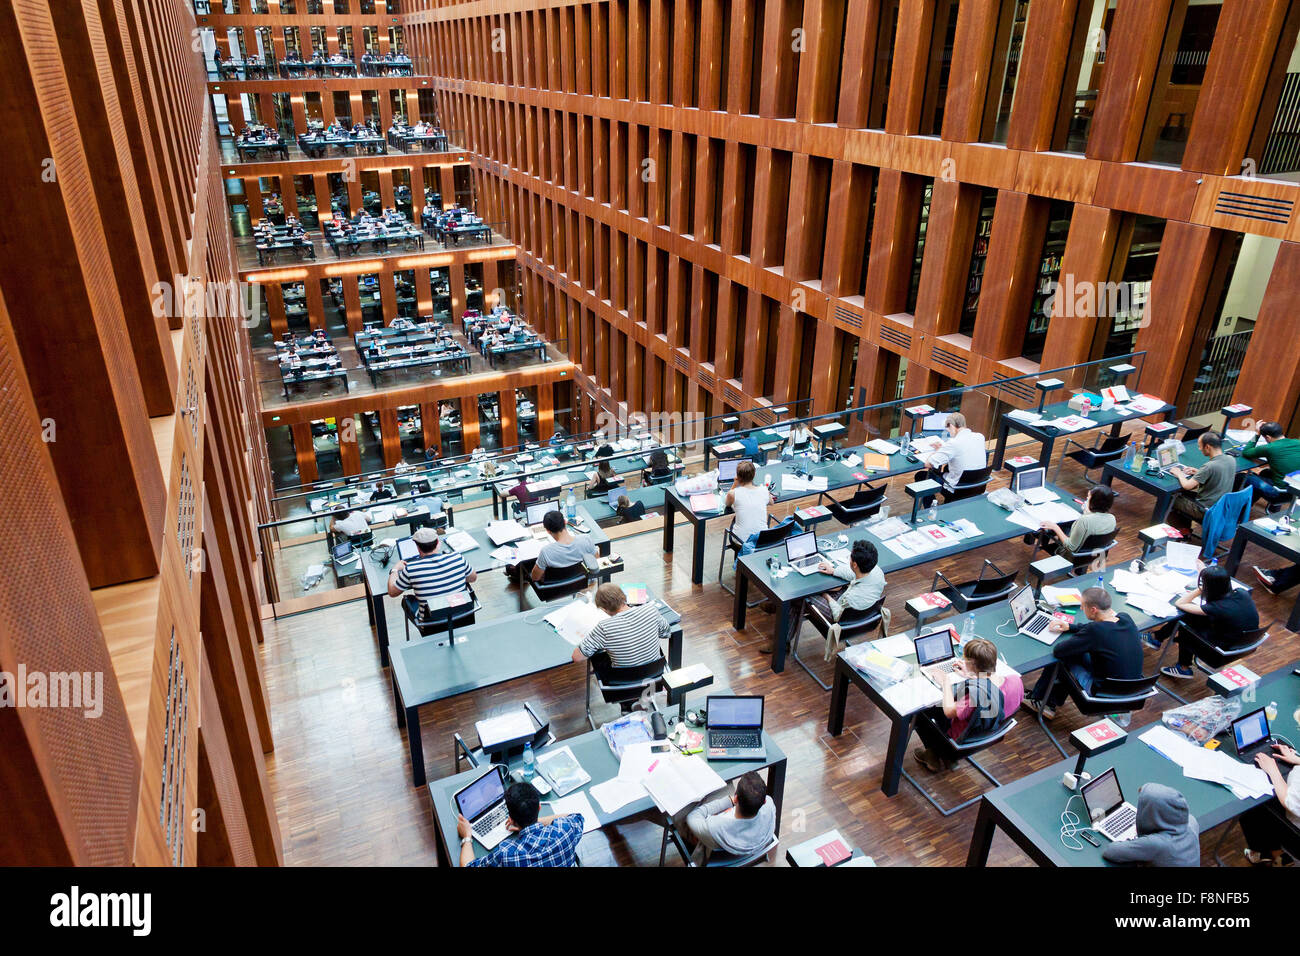 BERLIN, Deutschland - 1. Juli 2014: Humboldt-Universität Bibliothek in Berlin. Es ist eines der fortschrittlichsten wissenschaftlichen Bibliotheken in Deutschland Stockfoto